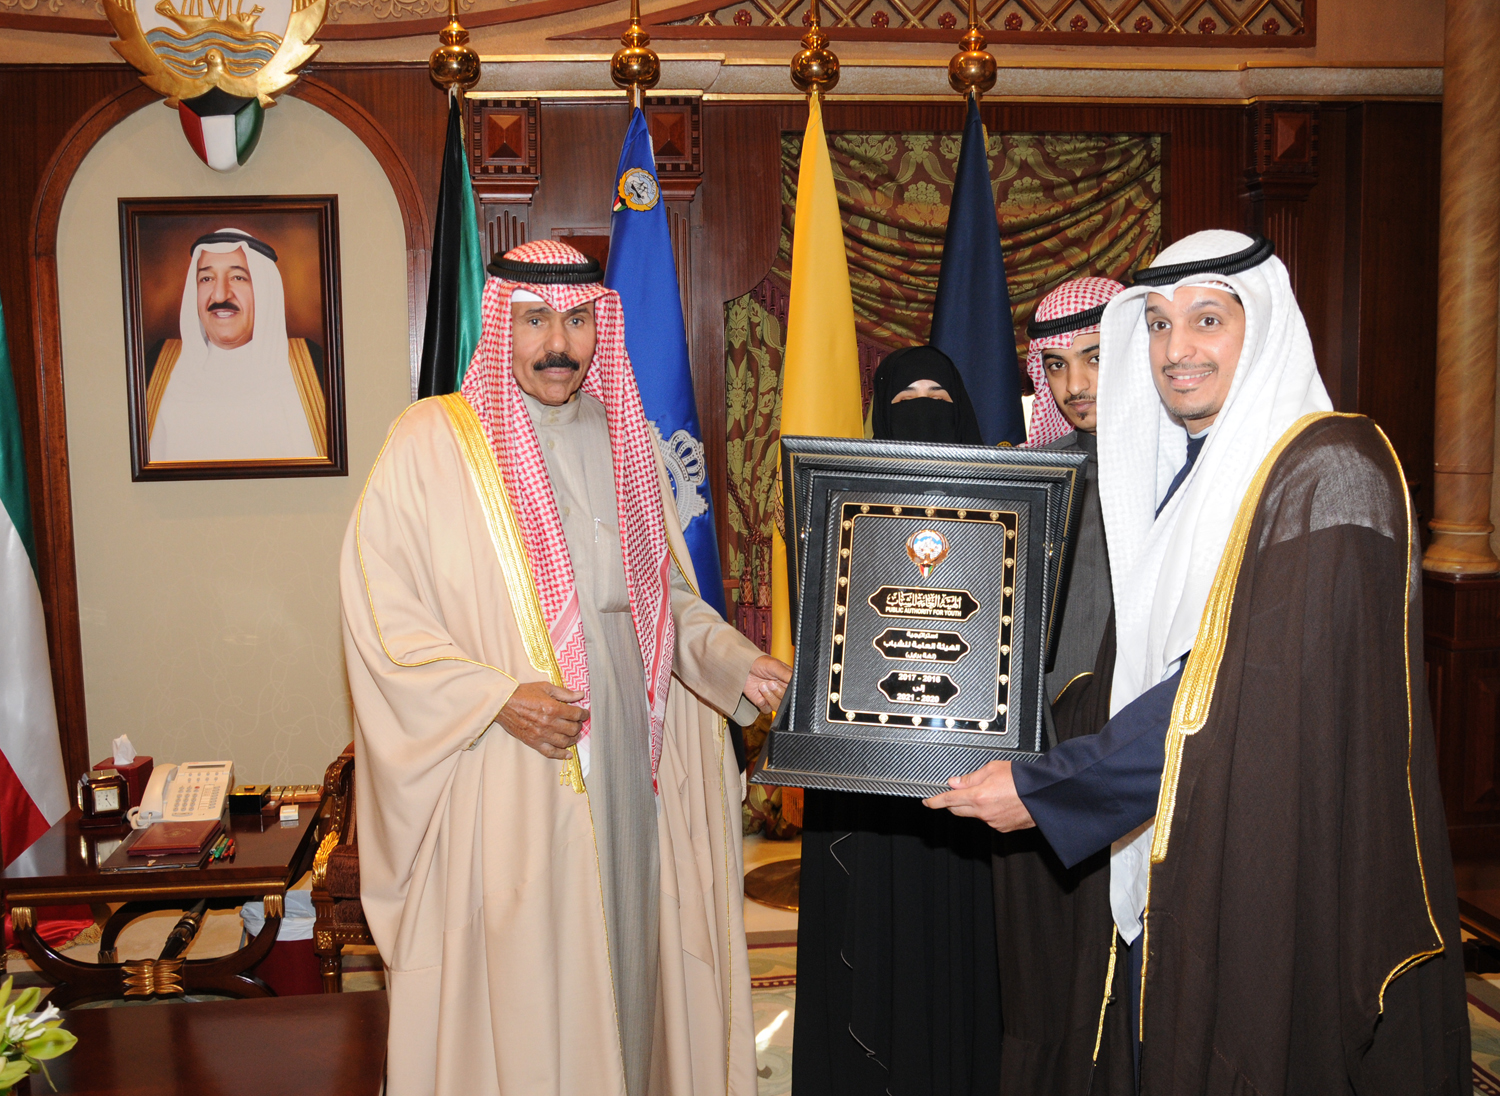 His Highness the Crown Prince Sheikh Nawaf Al-Ahmad Al-Jaber Al-Sabah received Minister of Information and Minister of State for Youth Affairs Sheikh Salman Sabah Salem Al-Humoud Al-Sabah